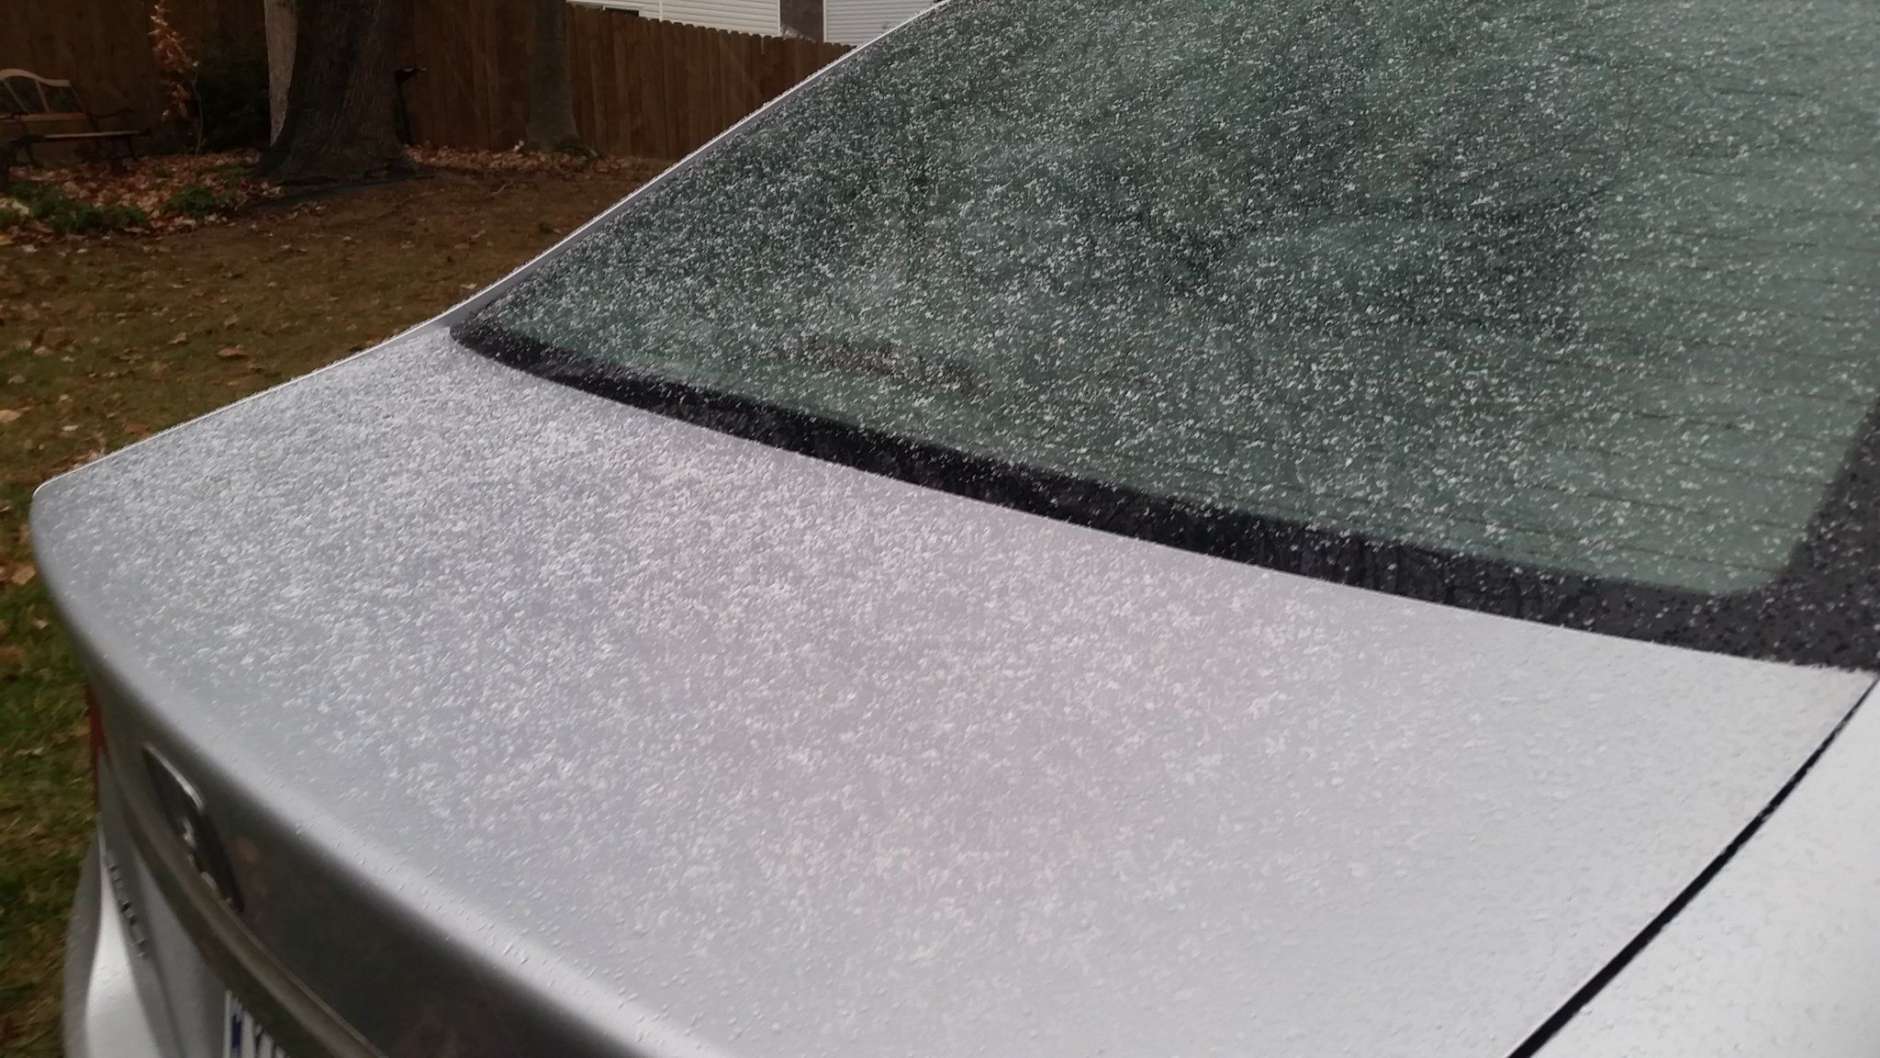 Snow begins to fall in Woodbridge, Virginia. (WTOP/Kathy Stewart)